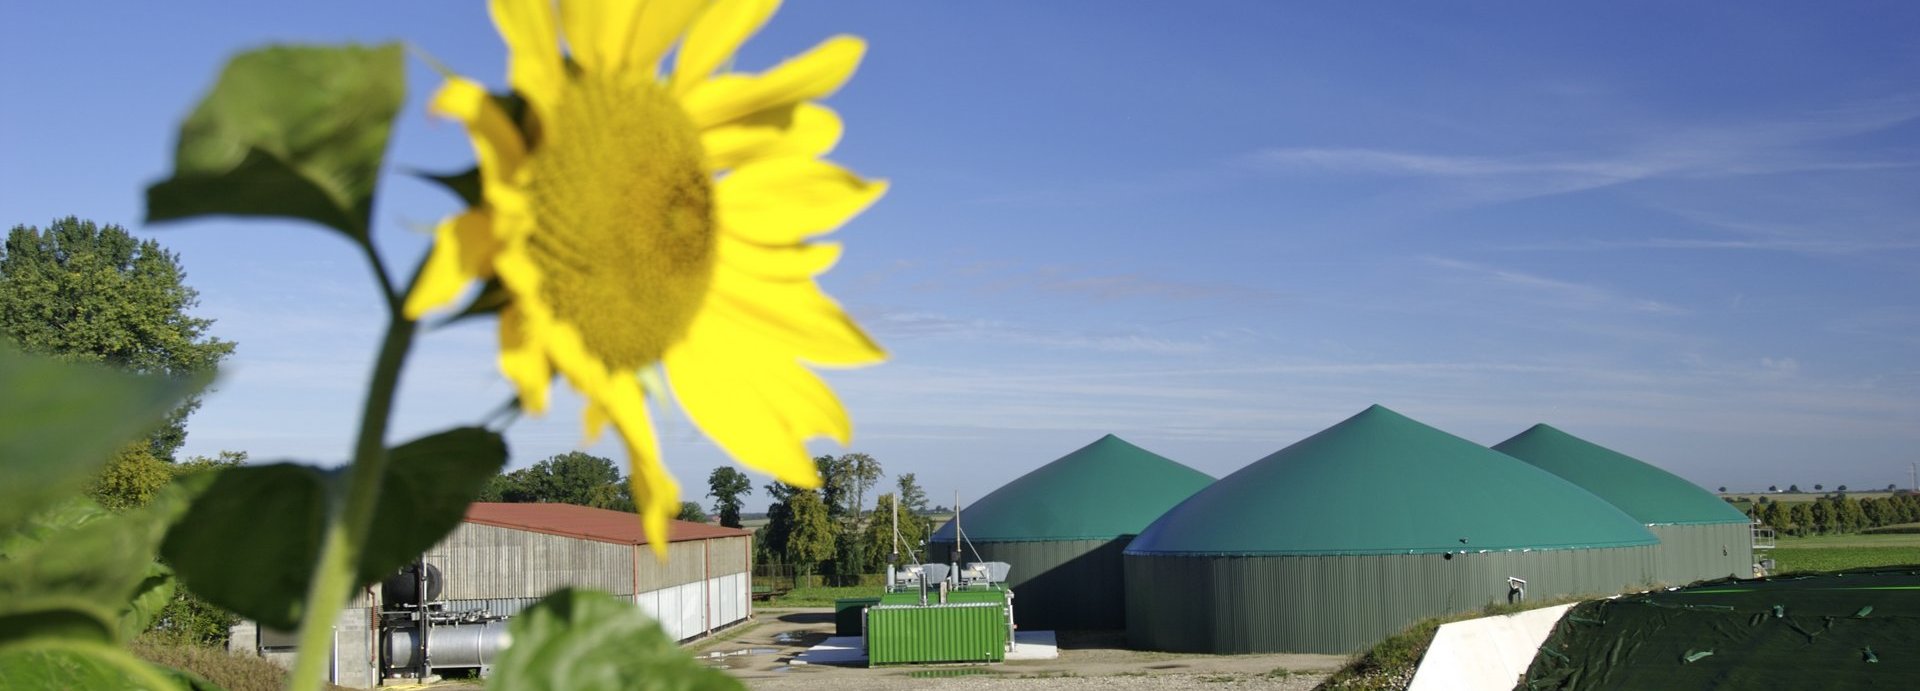 Biogasanlage vor dunkelblauem Himmel mit einzelner Sonnenblume im Vordergrund